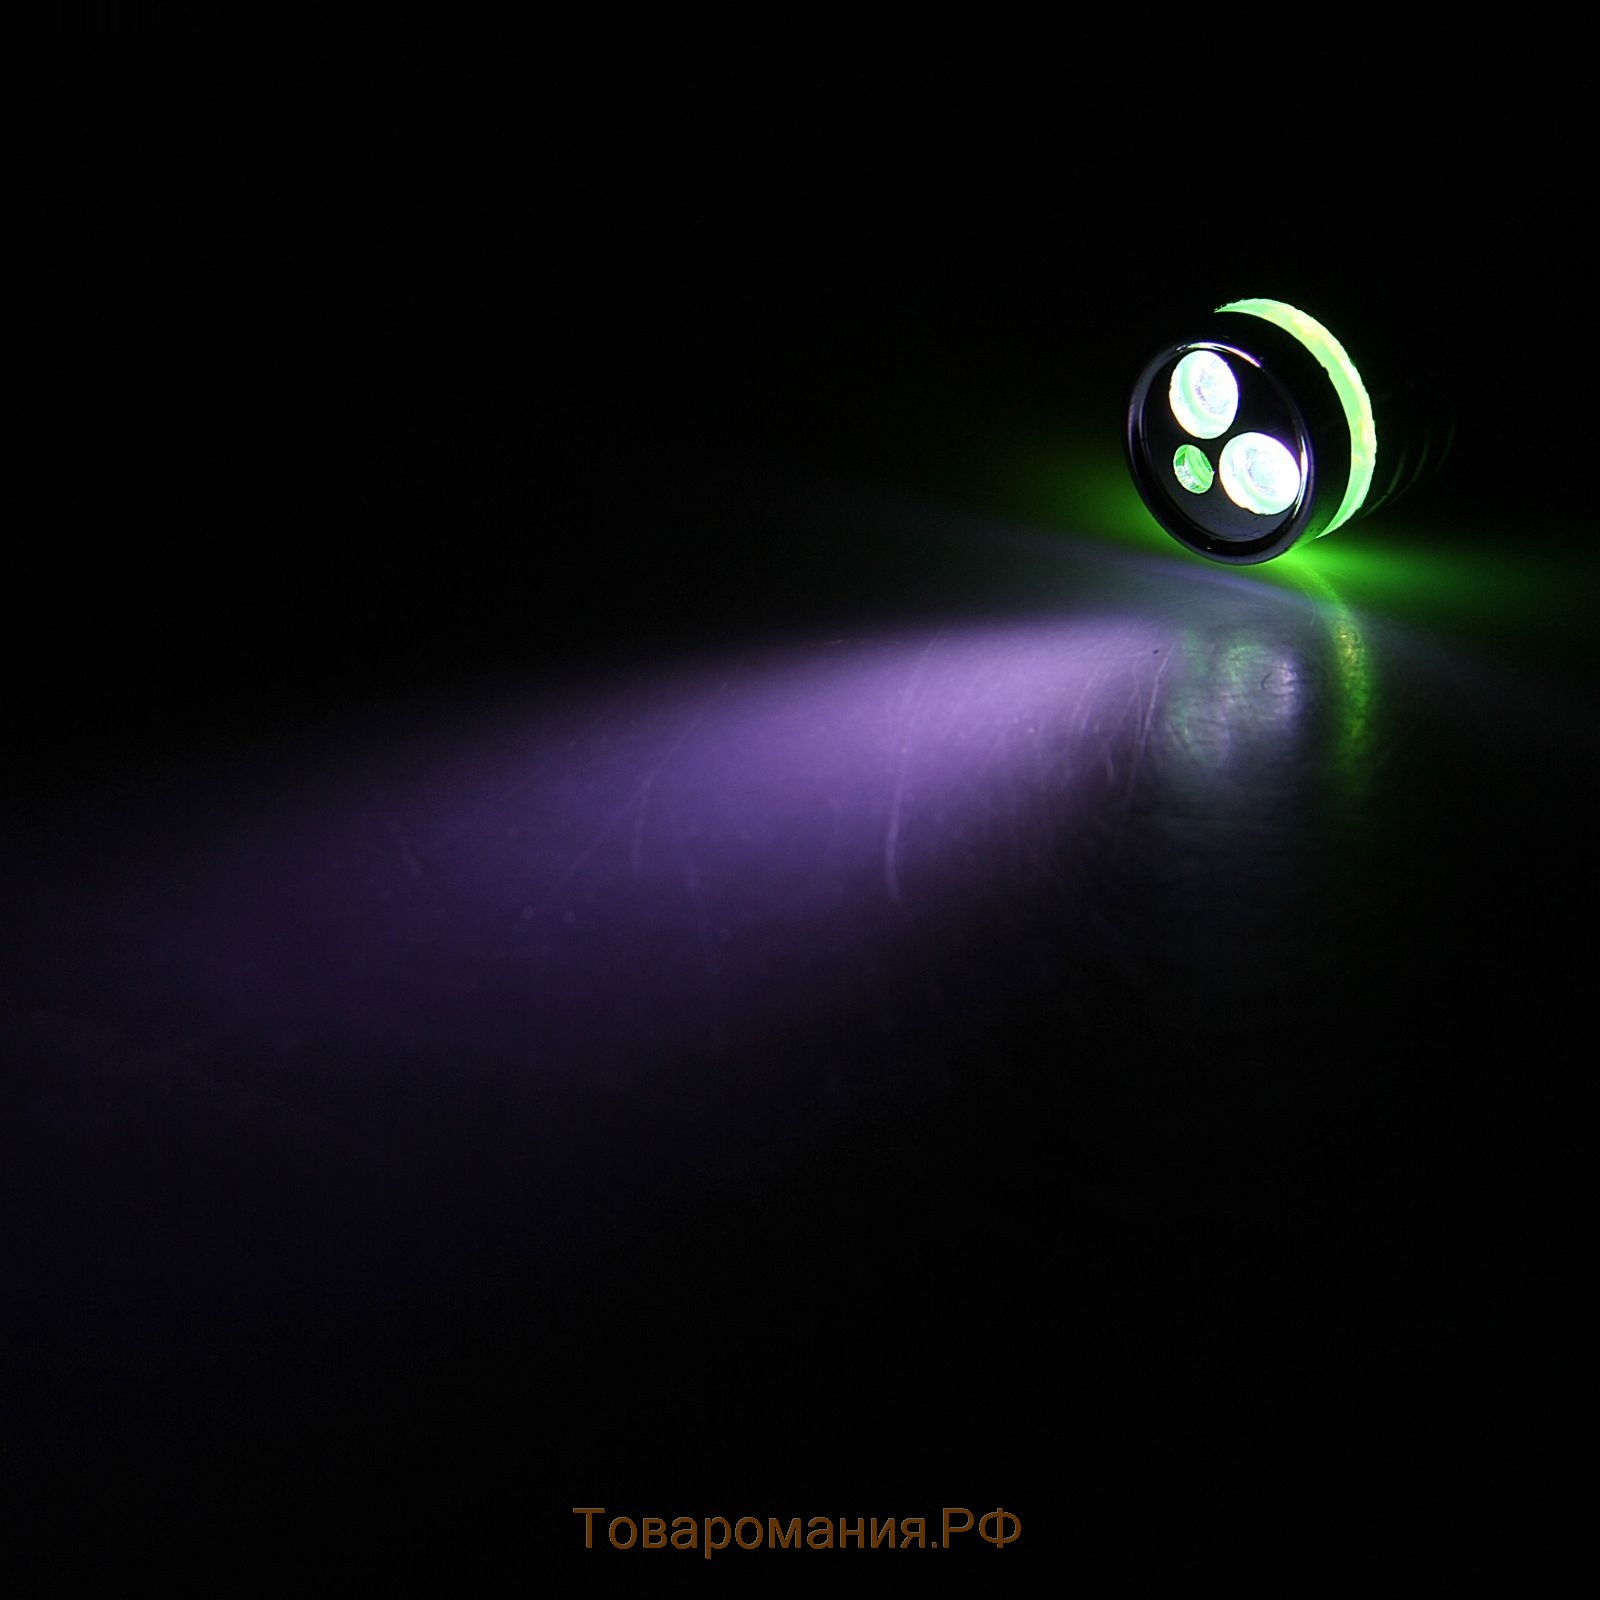 Лазерная указка "Мастер К", с карабином, 2 LED, 2 режима, 7 х 1.4 см